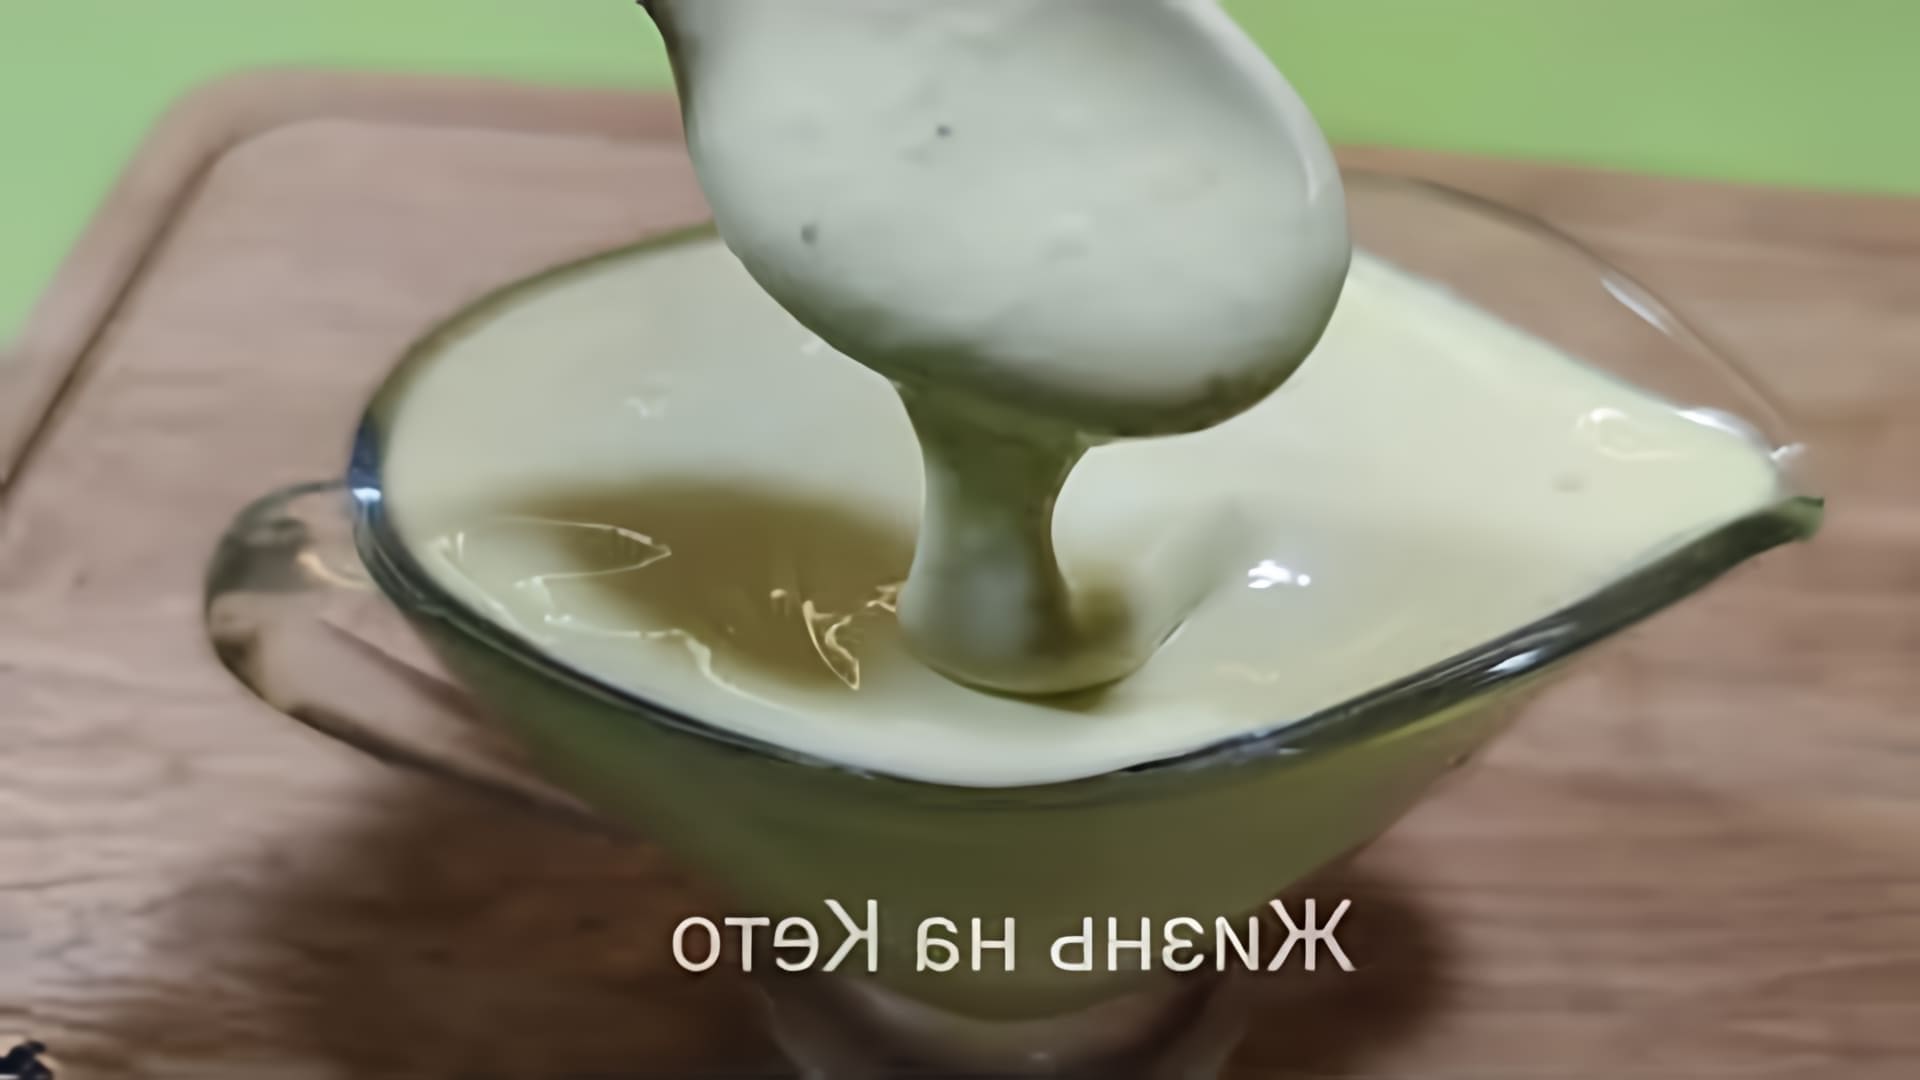 В этом видео демонстрируется рецепт домашнего майонеза на оливковом масле